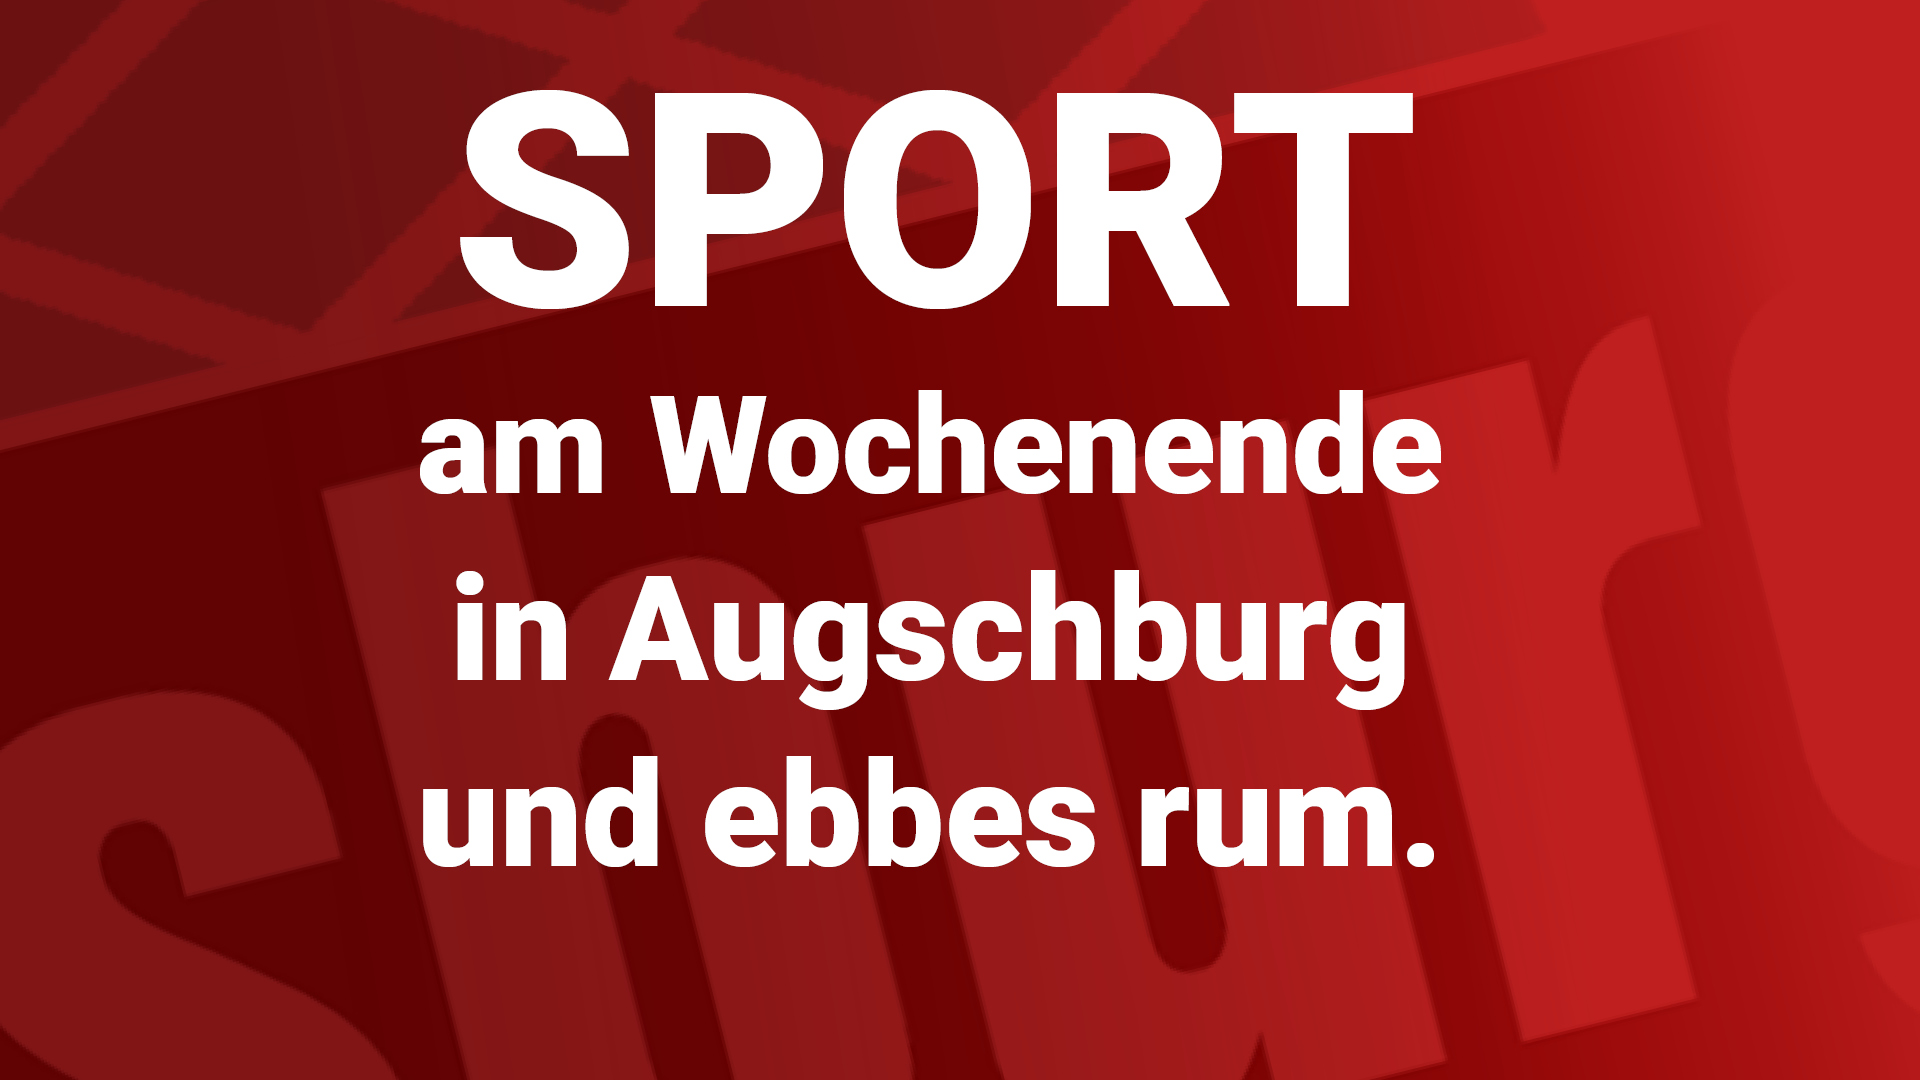 Sport-Tips für das Wochenende in Augsburg und Umgebung